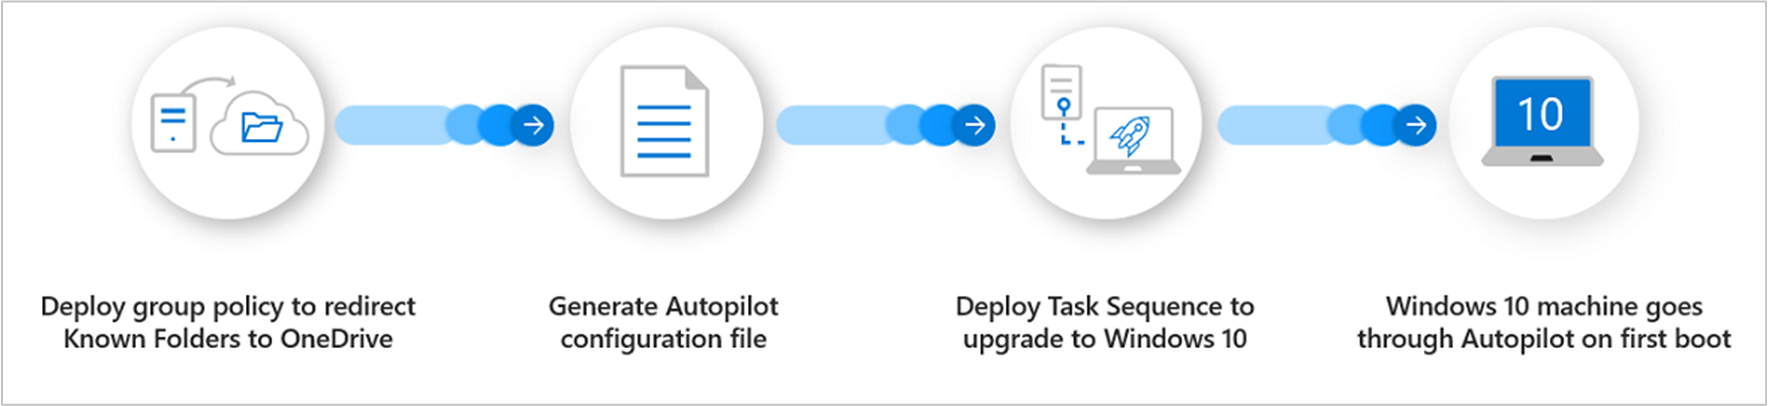 Panoramica del processo per Windows Autopilot per dispositivi esistenti